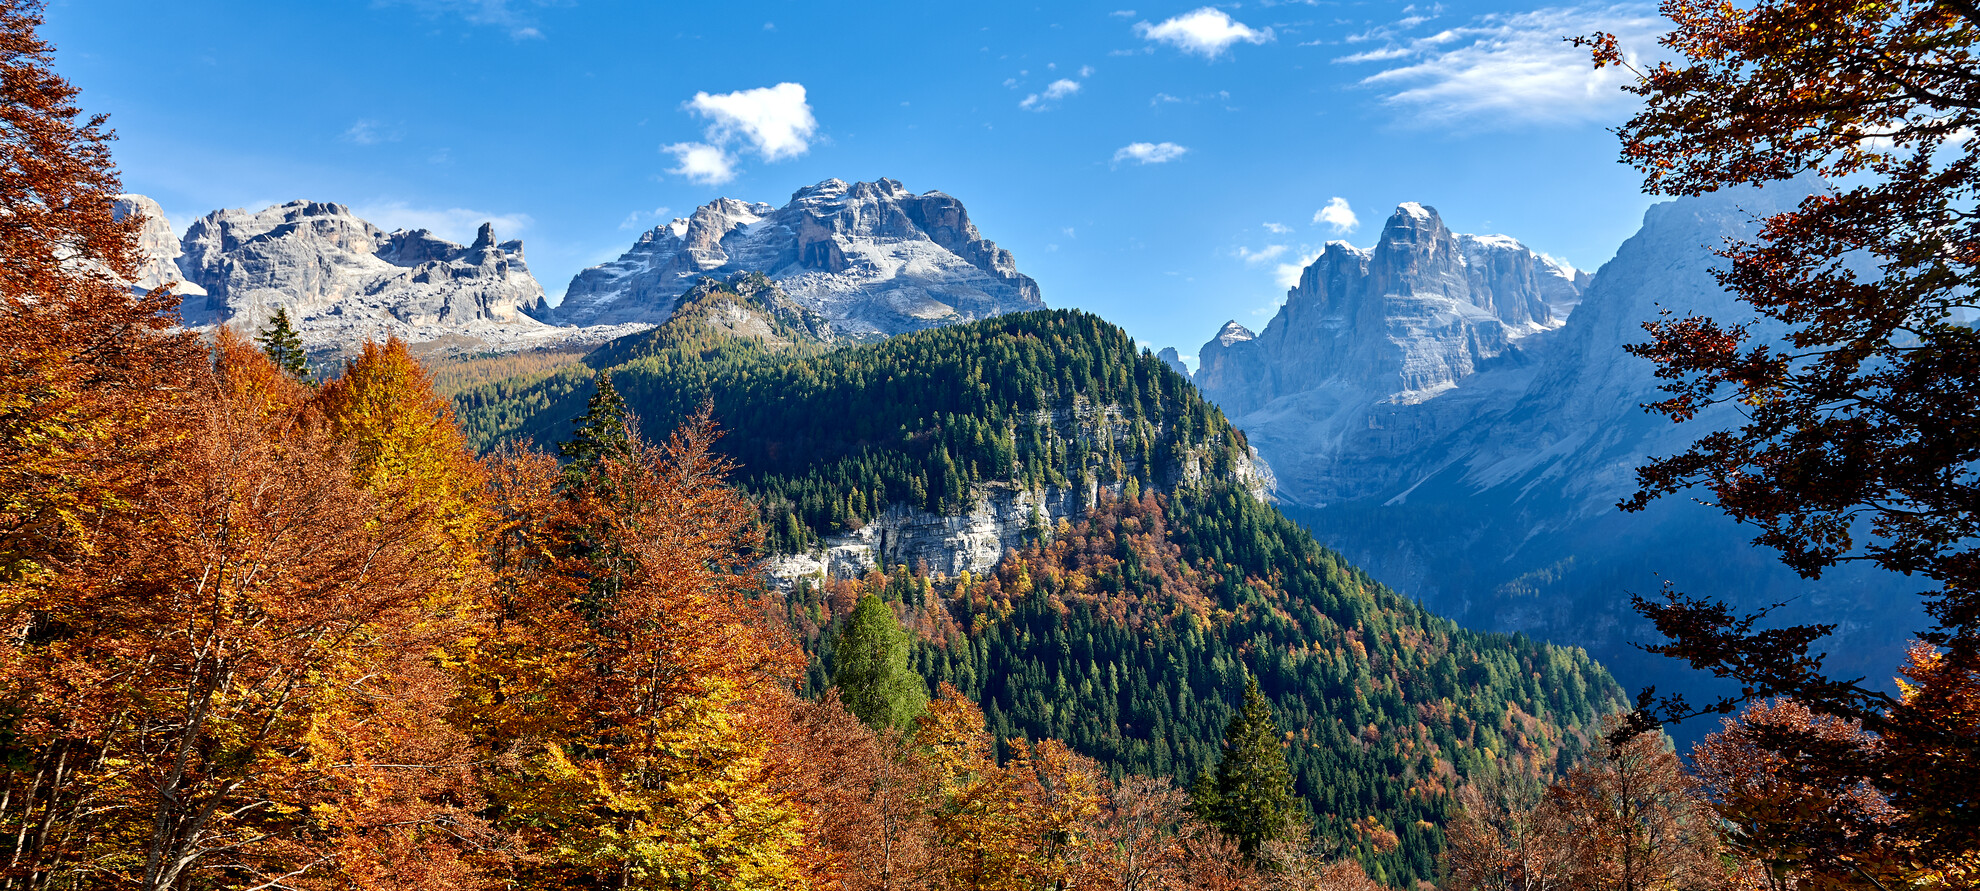 Dolomiti di Brenta - Val Rendena - Dolomiti di Brenta - Foliage
